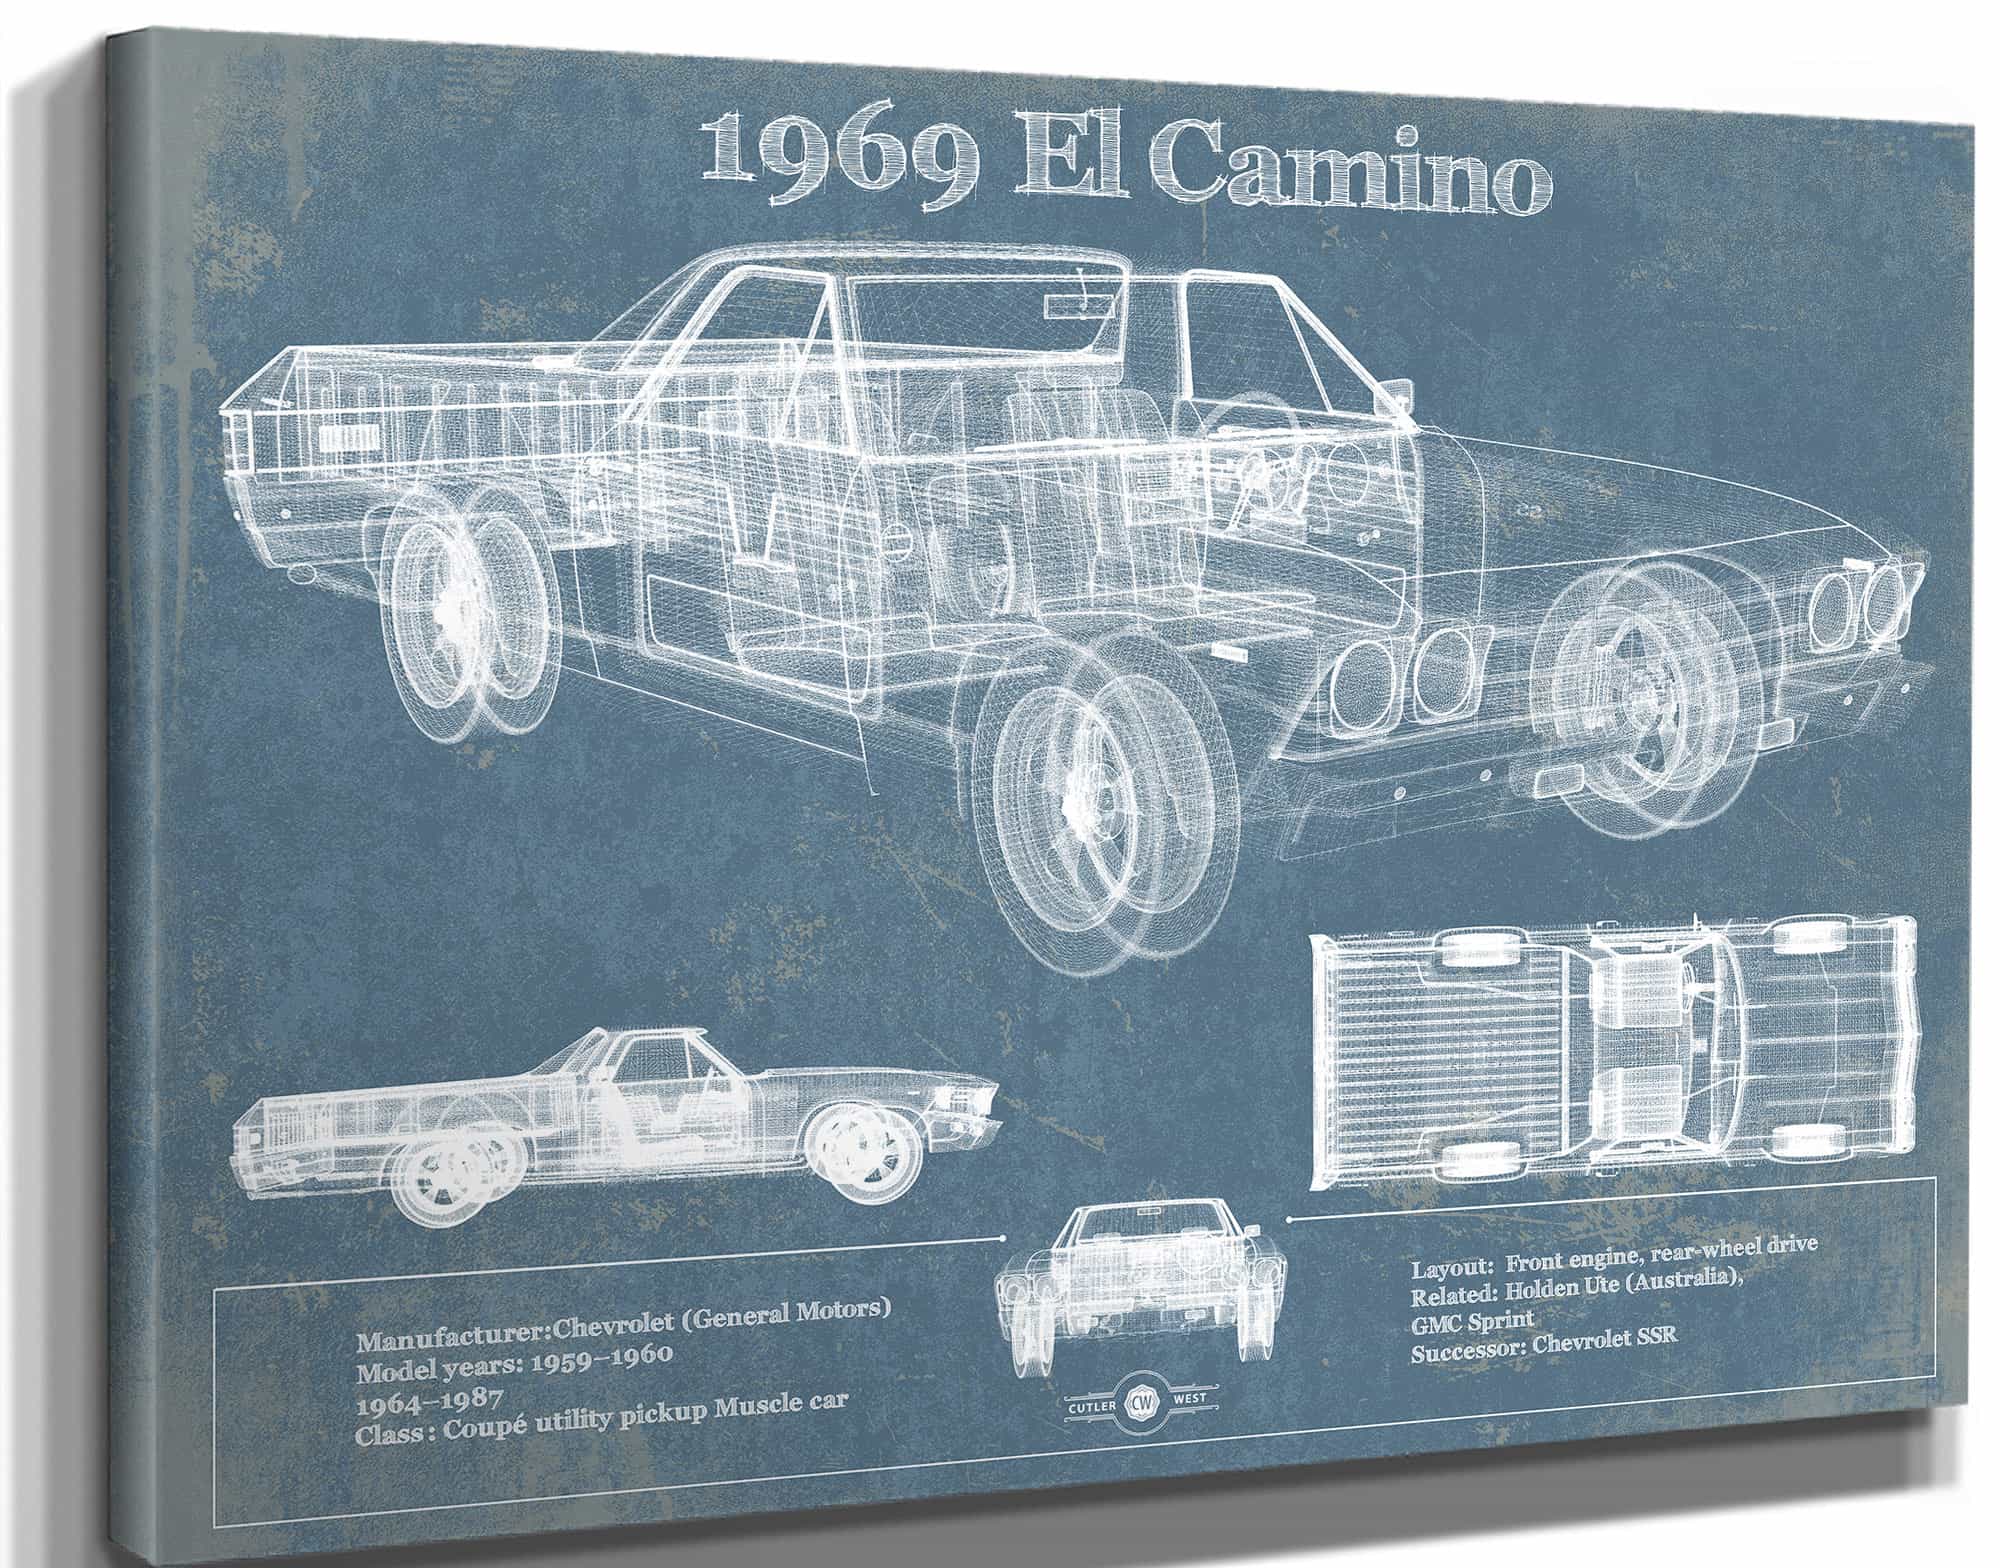 1969 El Camino Vintage Blueprint Auto Print